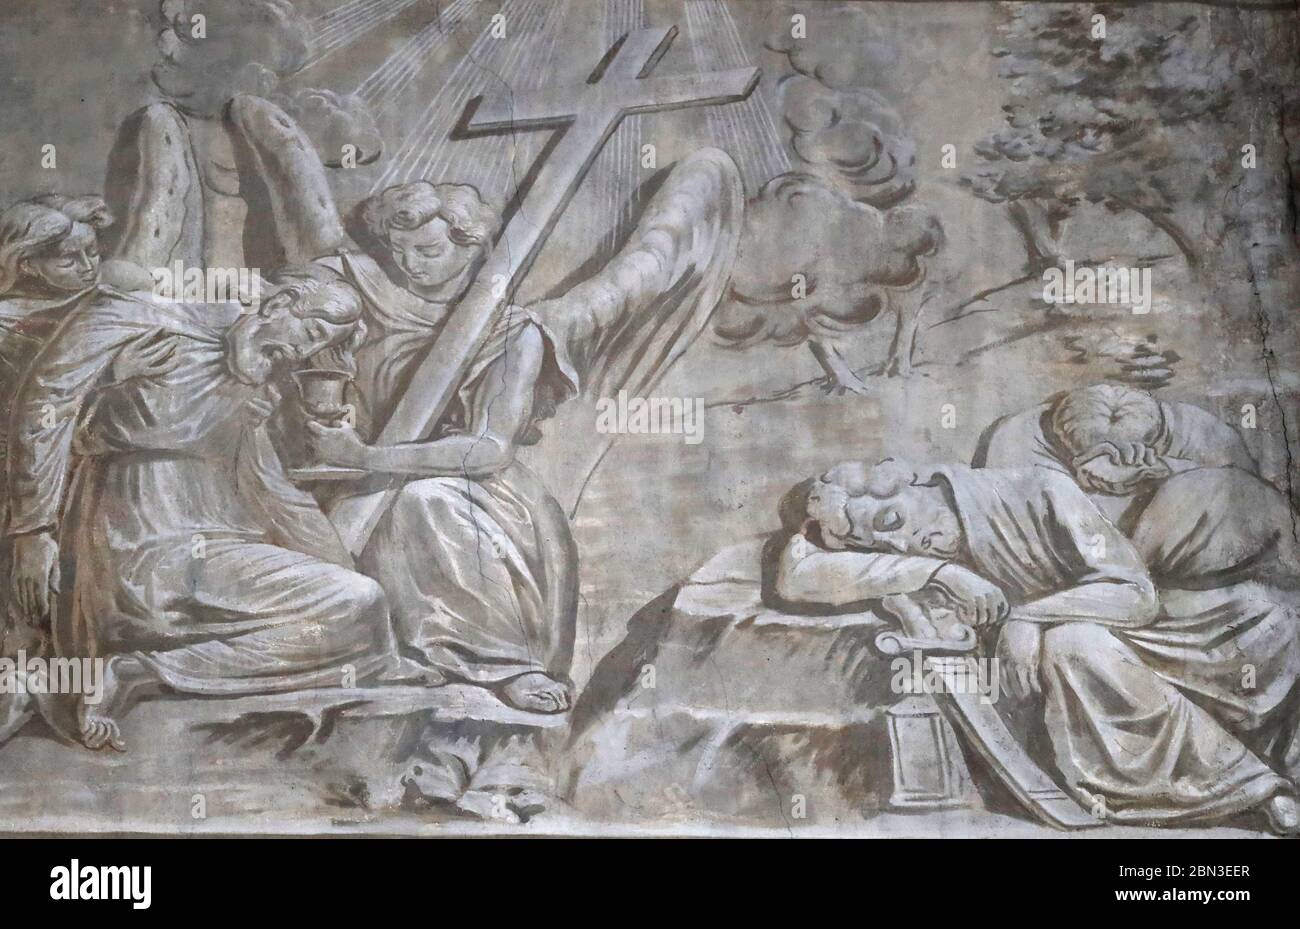 Cattedrale di Chambery. Dipinti a muro. Gesù pregava nel giardino del Getsemani dopo l'ultima cena, mentre i discepoli dormivano. Francia. Foto Stock